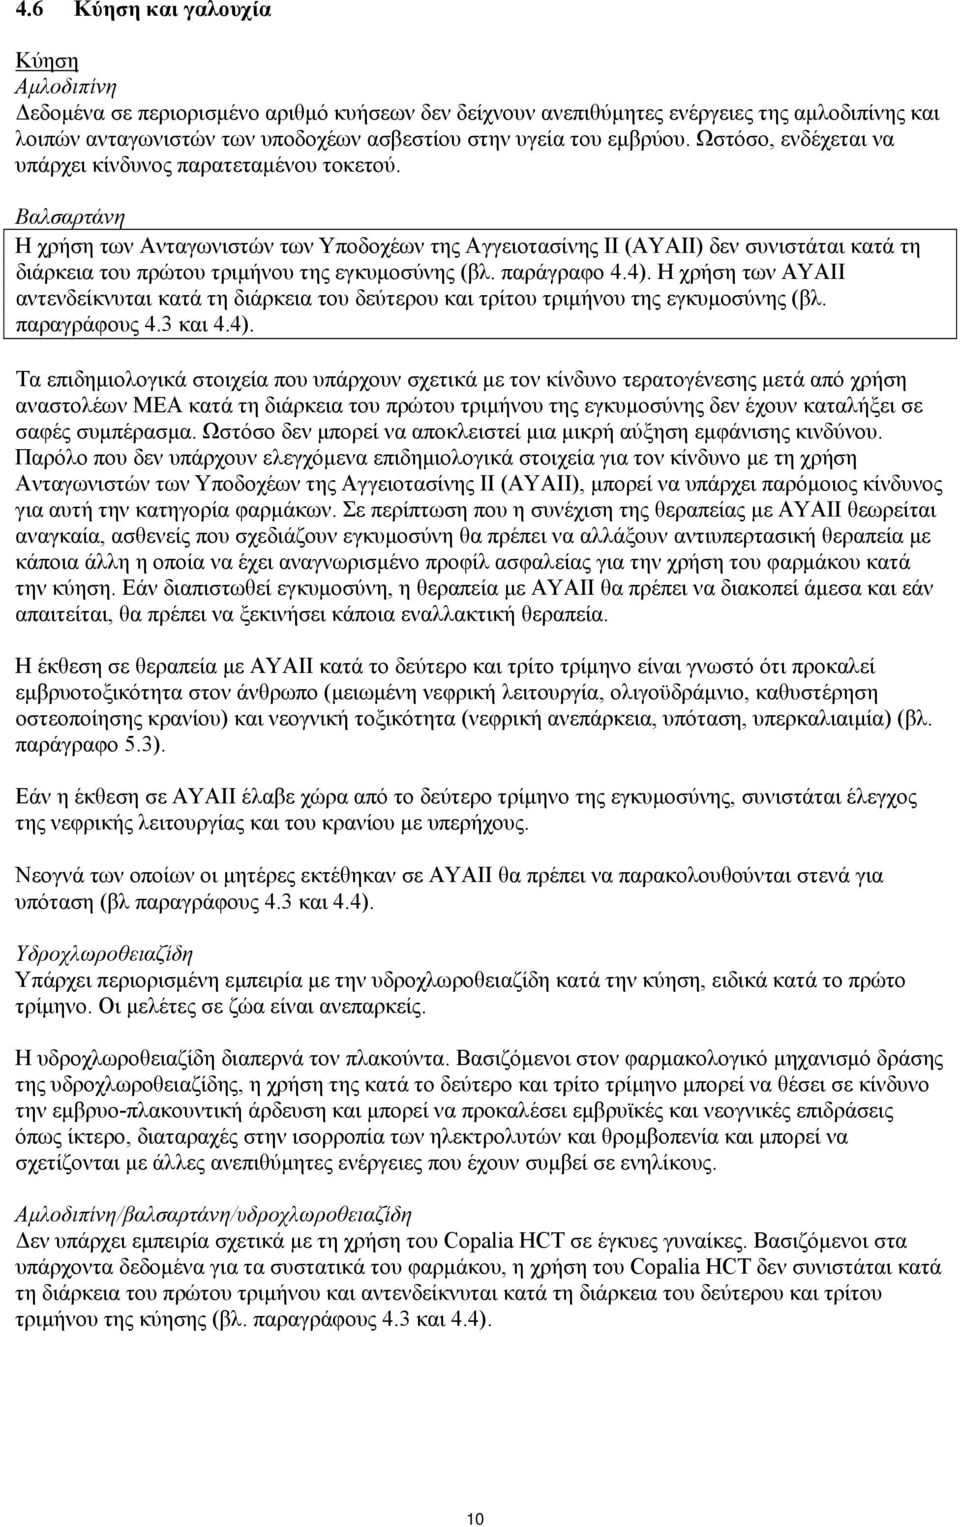 Βαλσαρτάνη Η χρήση των Ανταγωνιστών των Υποδοχέων της Αγγειοτασίνης ΙΙ (ΑΥΑΙΙ) δεν συνιστάται κατά τη διάρκεια του πρώτου τριμήνου της εγκυμοσύνης (βλ. παράγραφο 4.4).